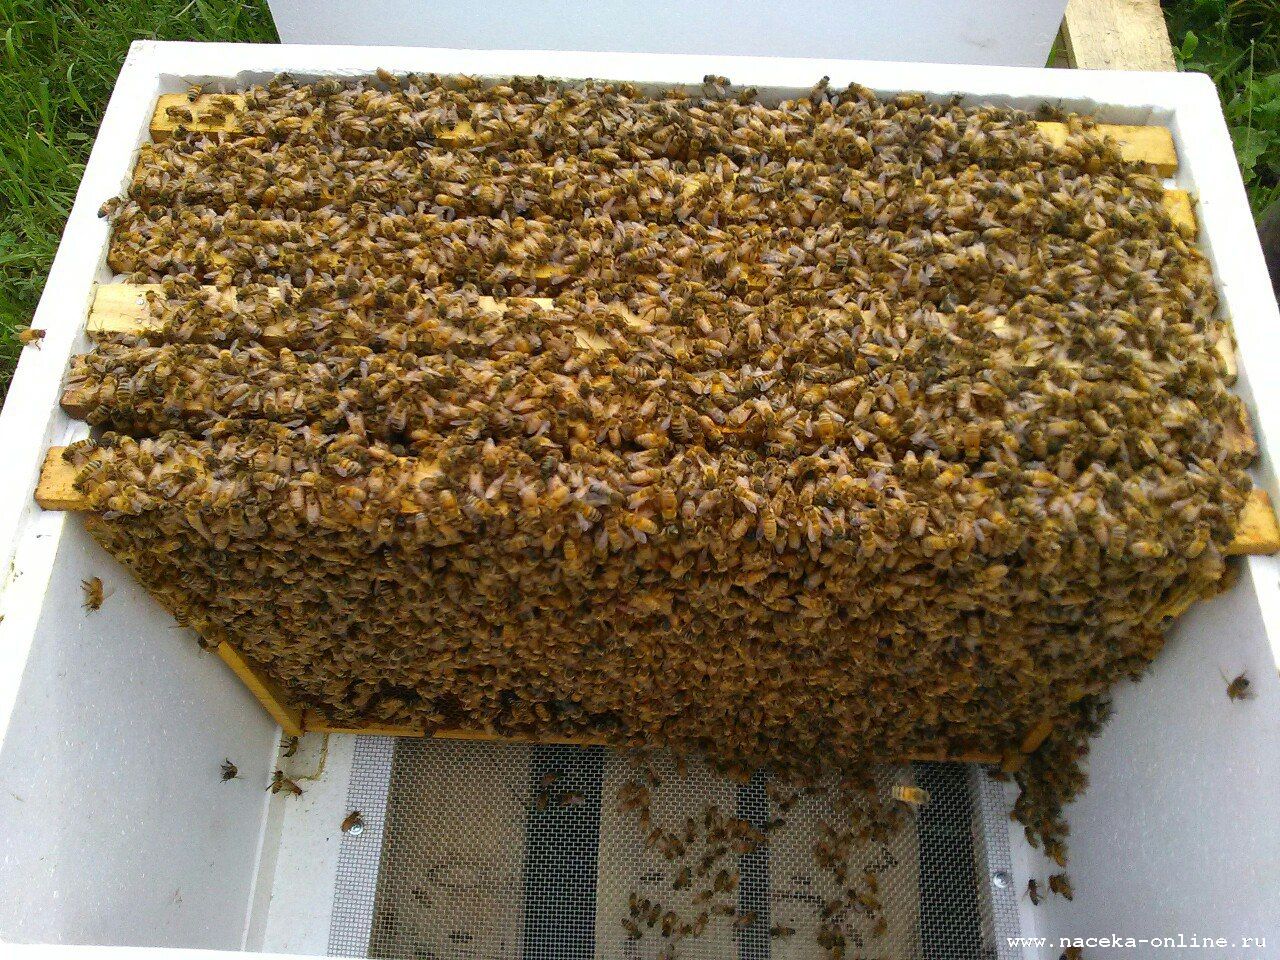 Авито краснодарский пчелопакеты. Пчелопакеты Бакфаст. Пчелопакеты украинской Степной пчелы. Пчелиный пакет. Бессотовый пчелопакет.